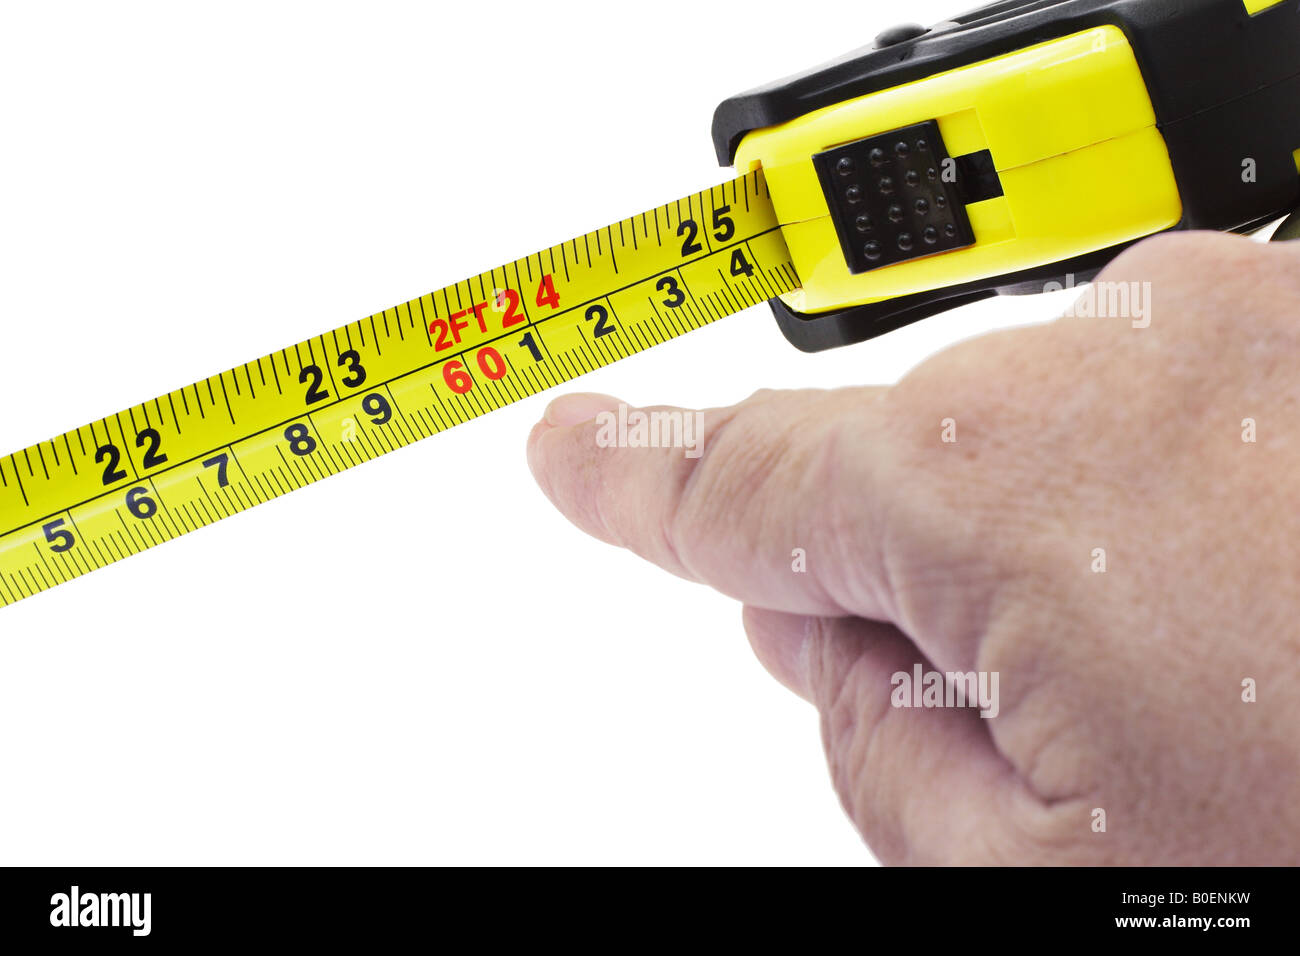 https://c8.alamy.com/comp/B0ENKW/finger-pointing-at-2-feet-on-measuring-tape-on-white-background-B0ENKW.jpg